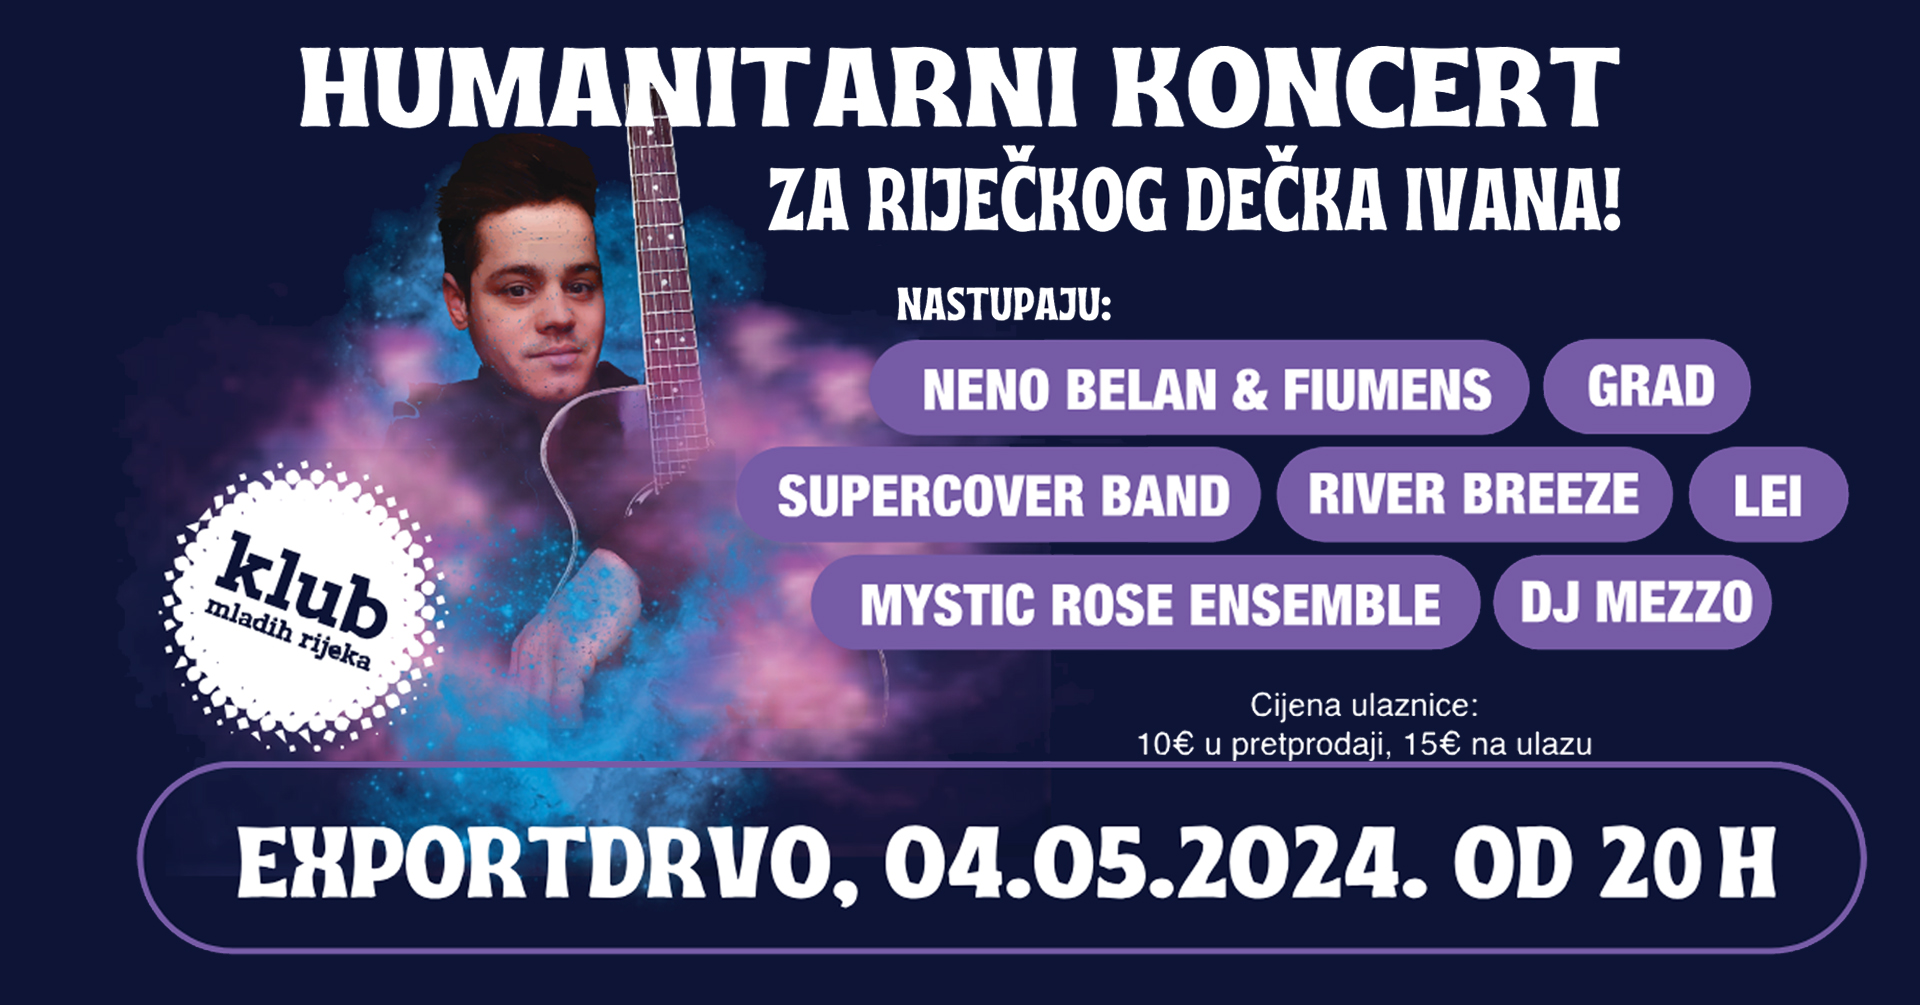 Humanitarni koncert za Ivana Ferderbera u subotu u riječkom Exportdrvu